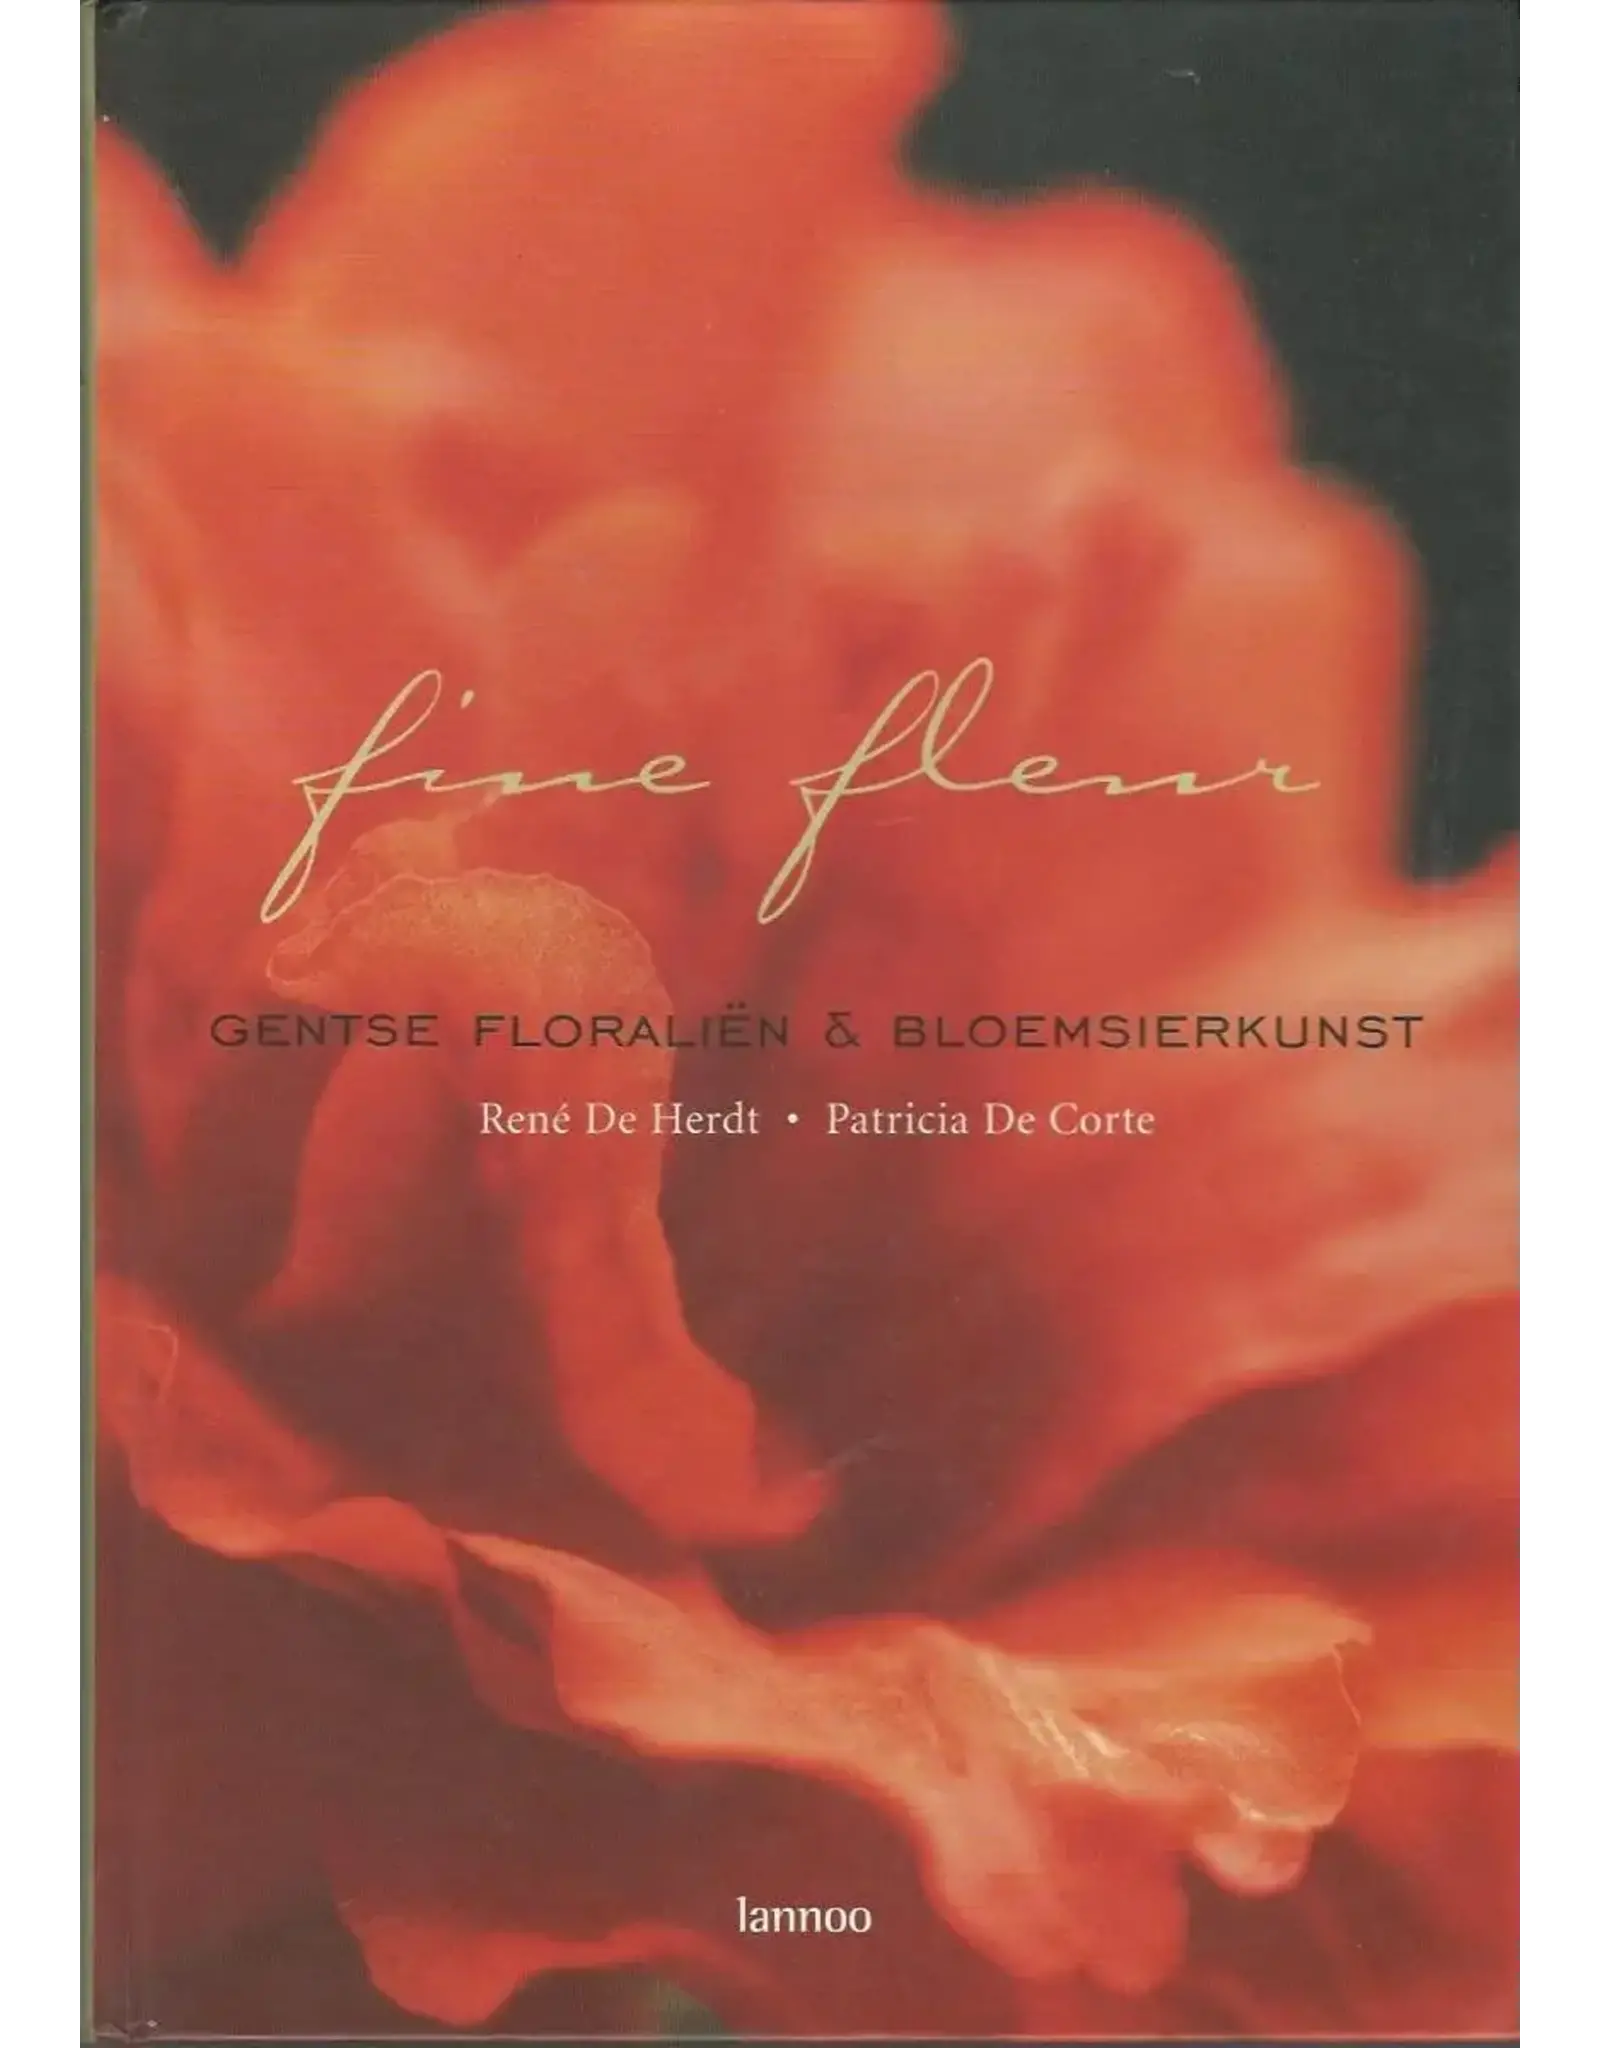 Lannoo Fine Fleur Floralies Gantoises and Art Floral Hardcover Book by René de Herdt